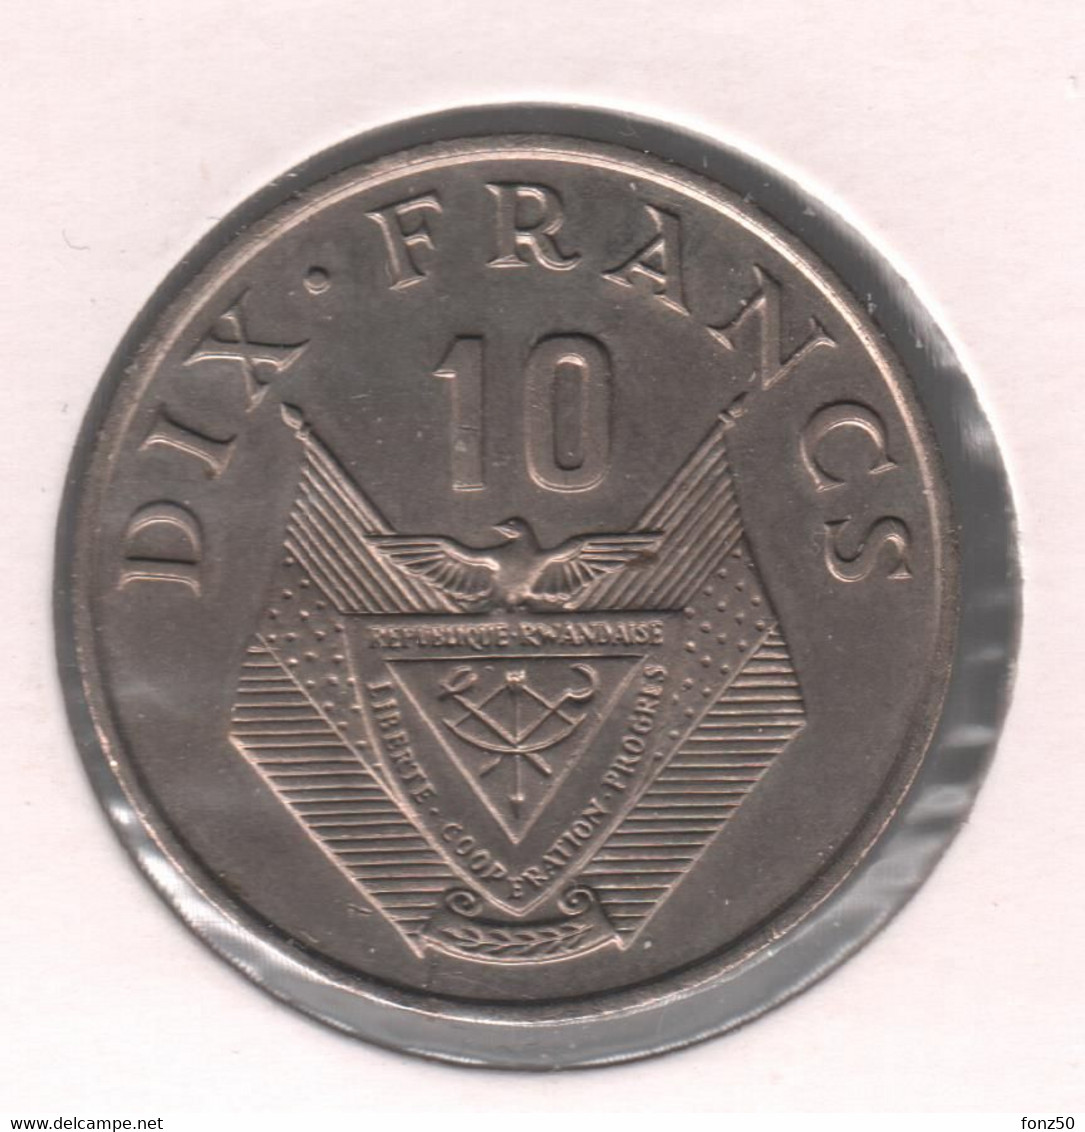 RWANDA * 10 Francs 1974 * Prachtig * Nr 10459 - Rwanda